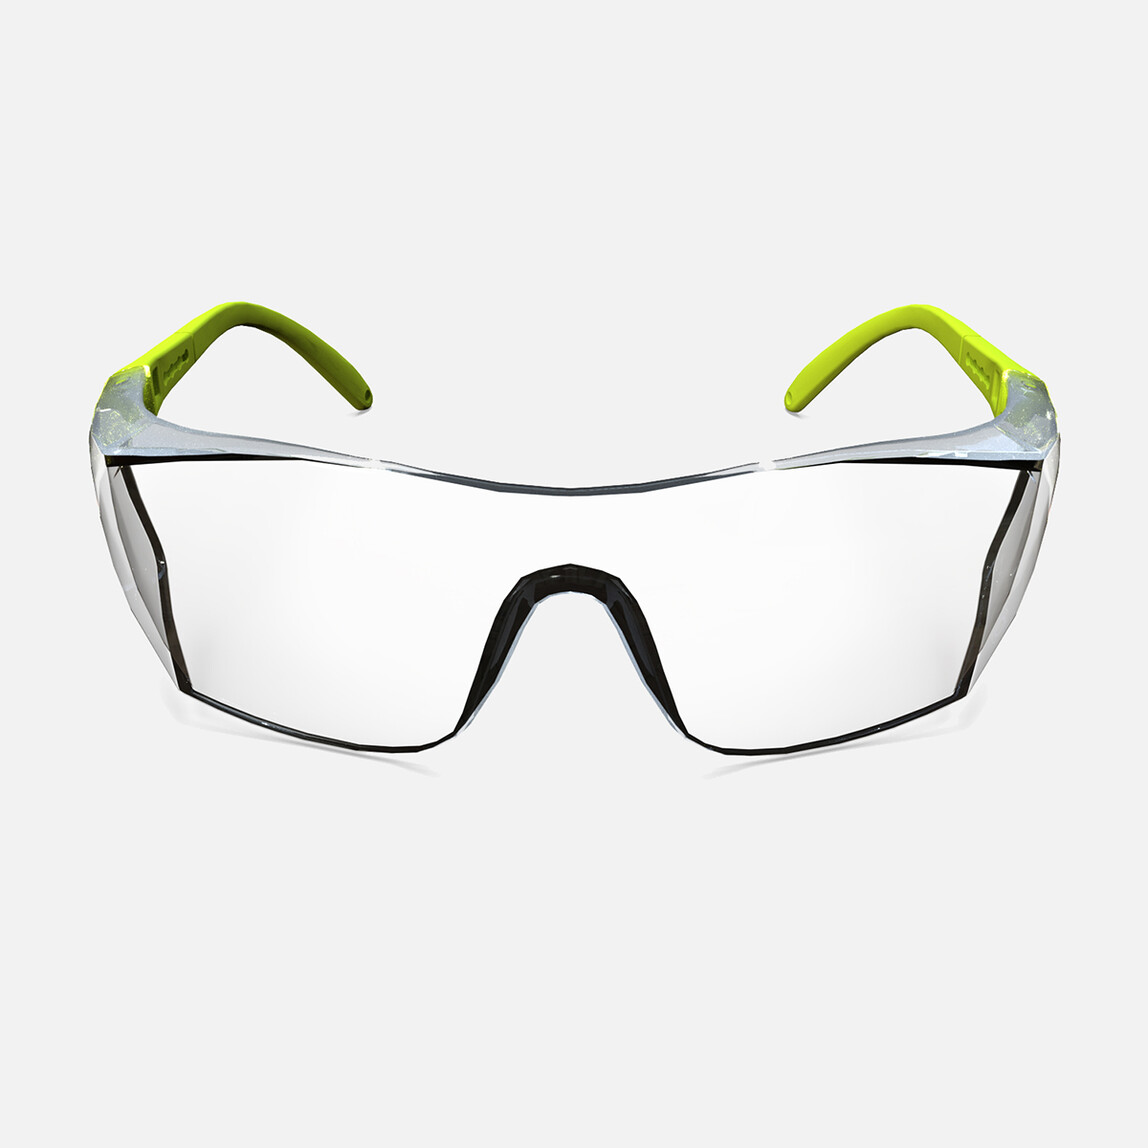    Gözlük - Şeffaf Cam S400 Buğulanmaz  